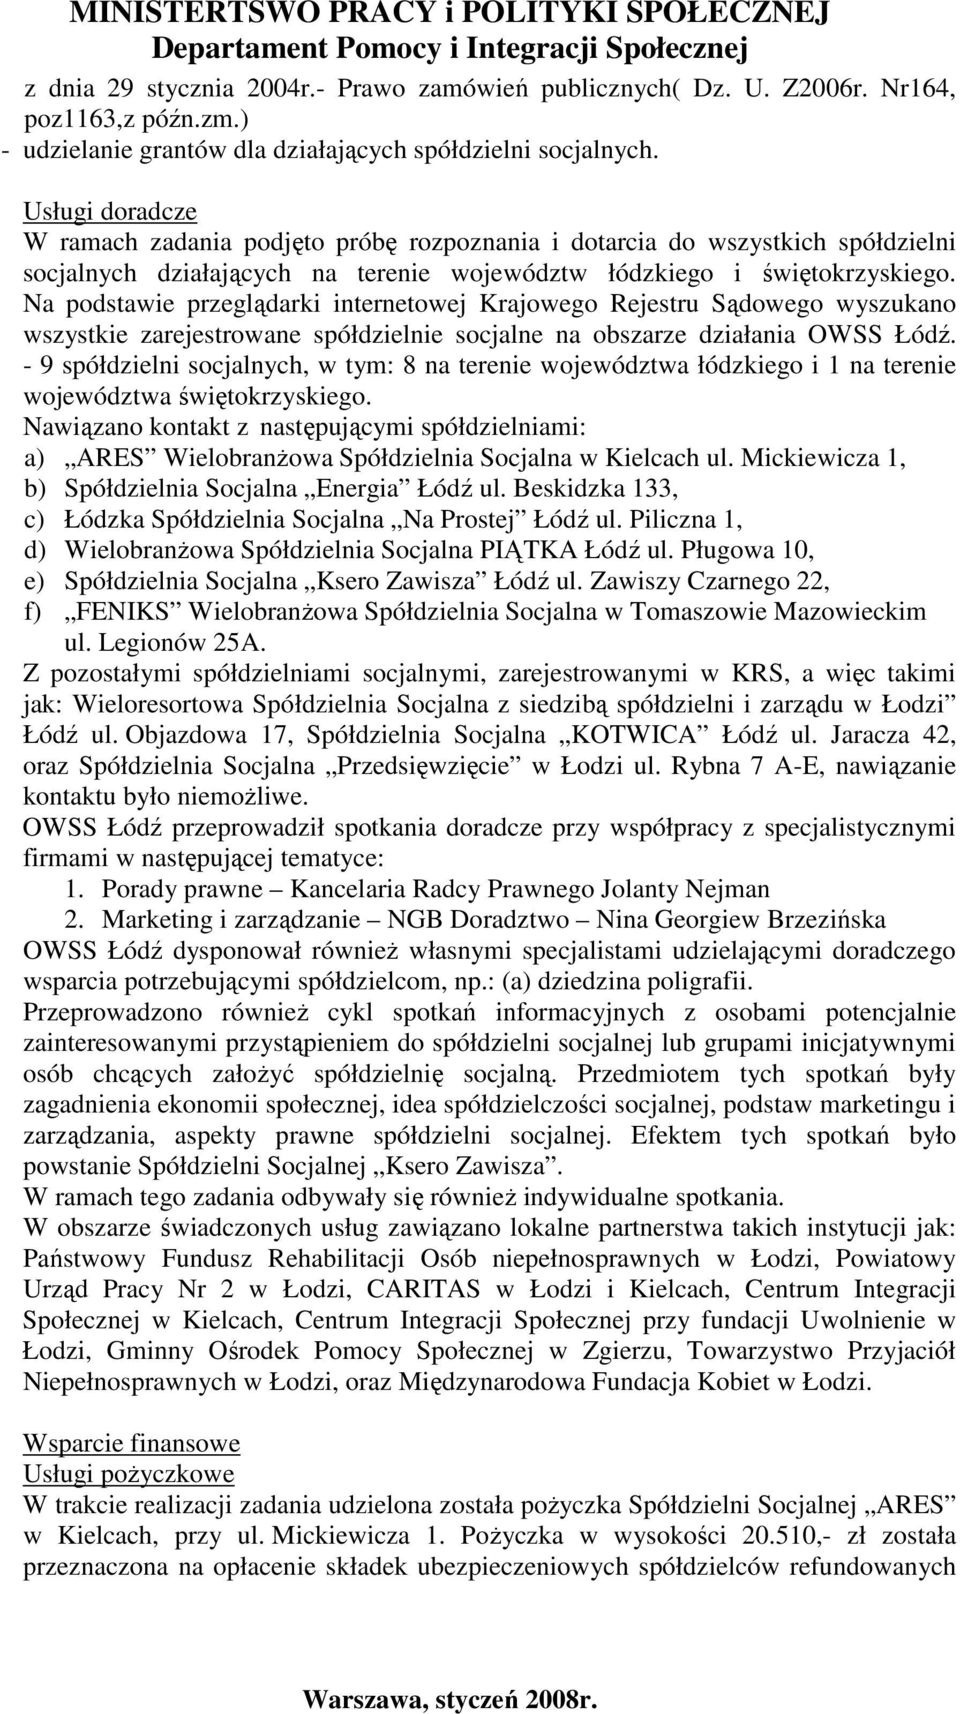 Na podstawie przeglądarki internetowej Krajowego Rejestru Sądowego wyszukano wszystkie zarejestrowane spółdzielnie socjalne na obszarze działania OWSS Łódź.